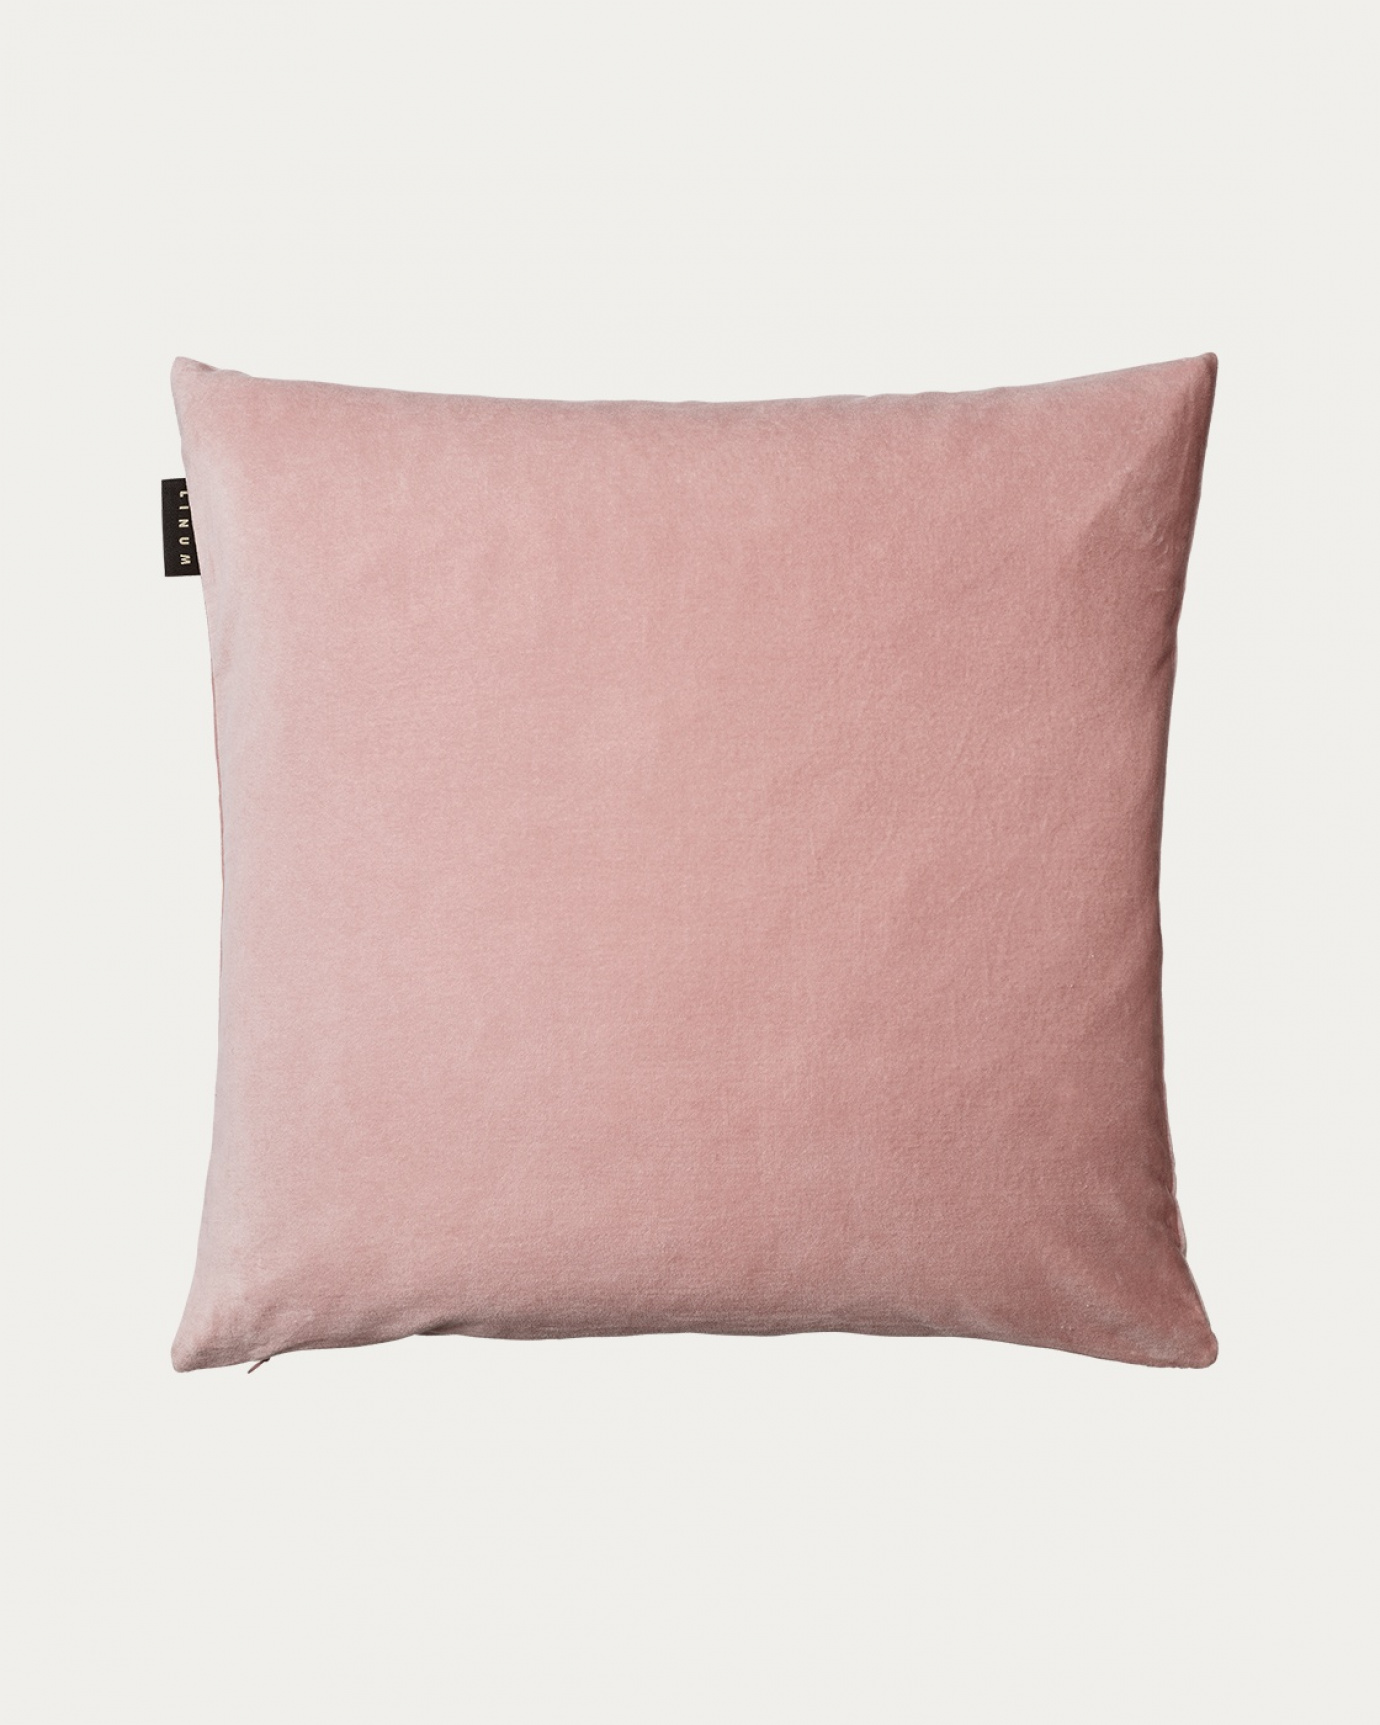 Produktbild dammig rosa PAOLO kuddfodral av mjuk bomullssammet från LINUM DESIGN. Storlek 50x50 cm.